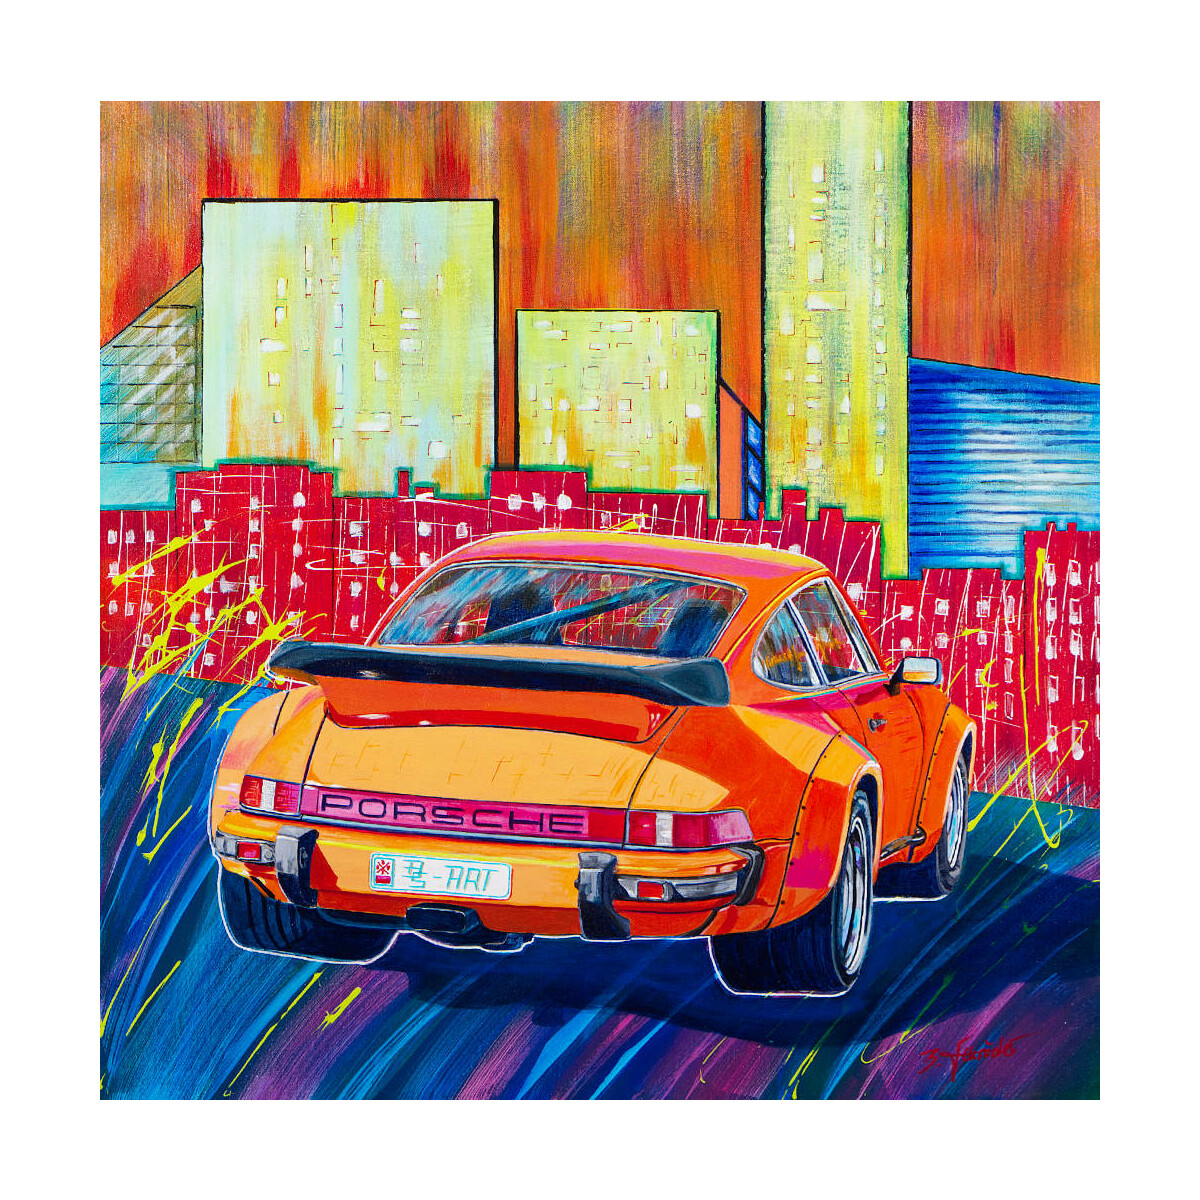  Porsche City' Leinwand Druck vom Original Acrylbild'